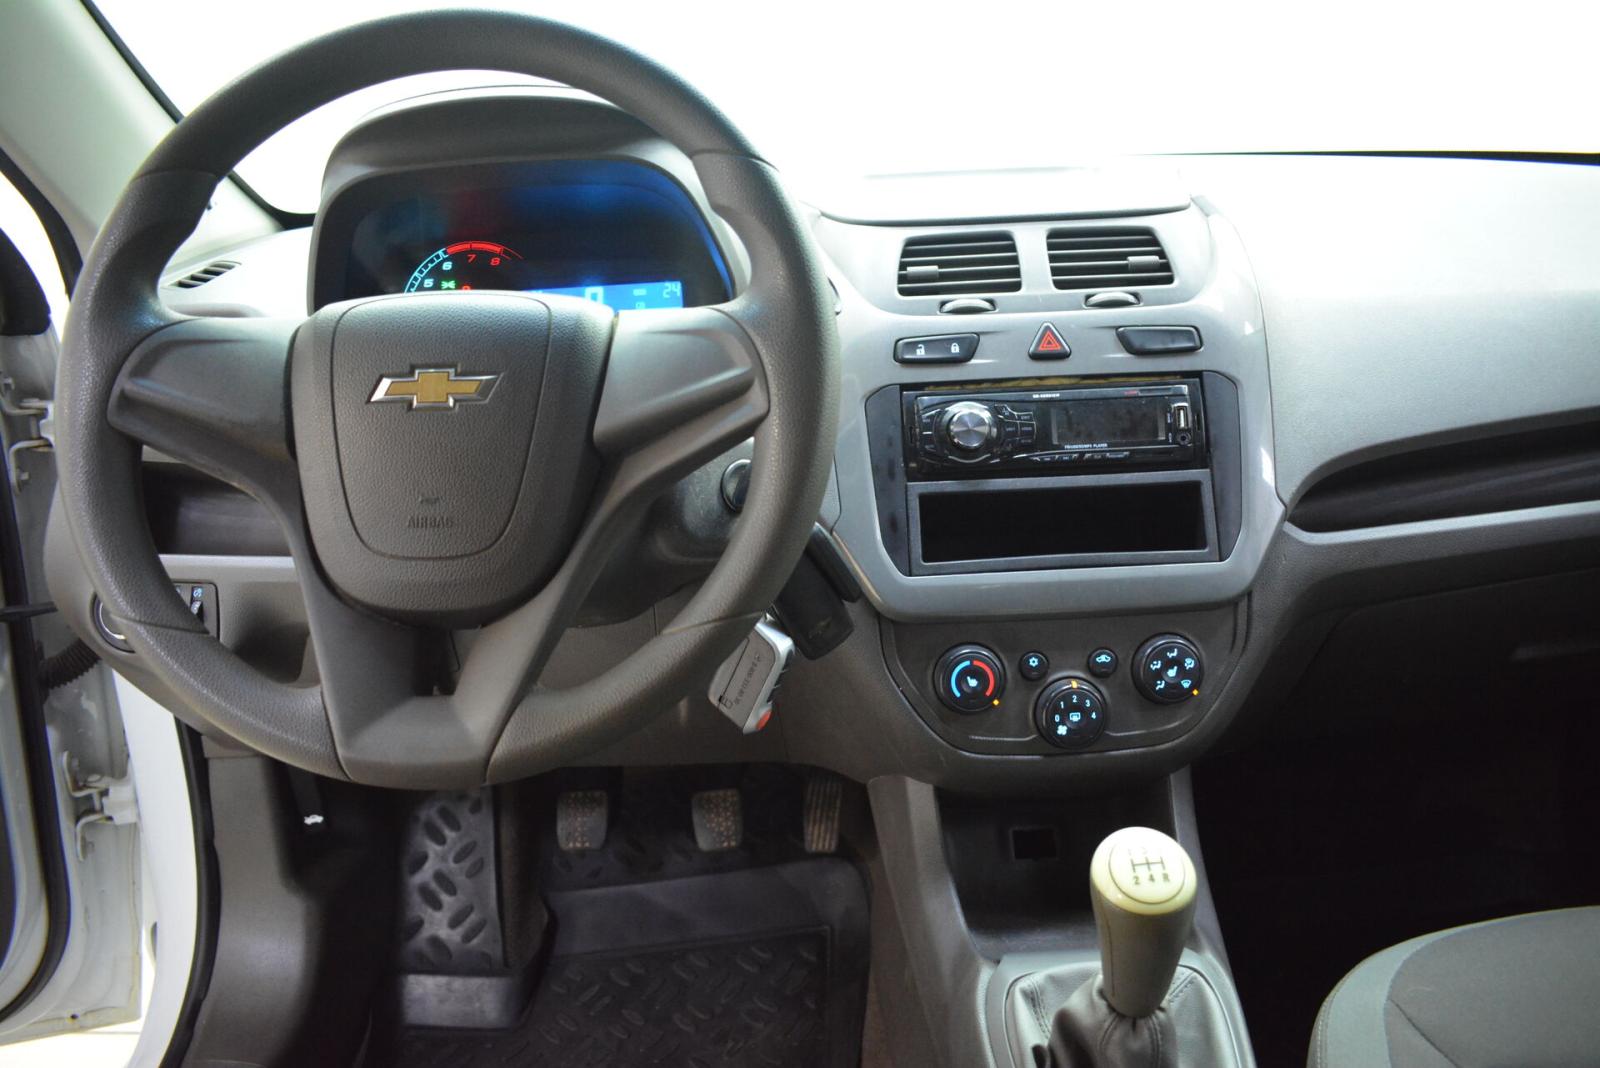 Chevrolet Cobalt, II 2013г.